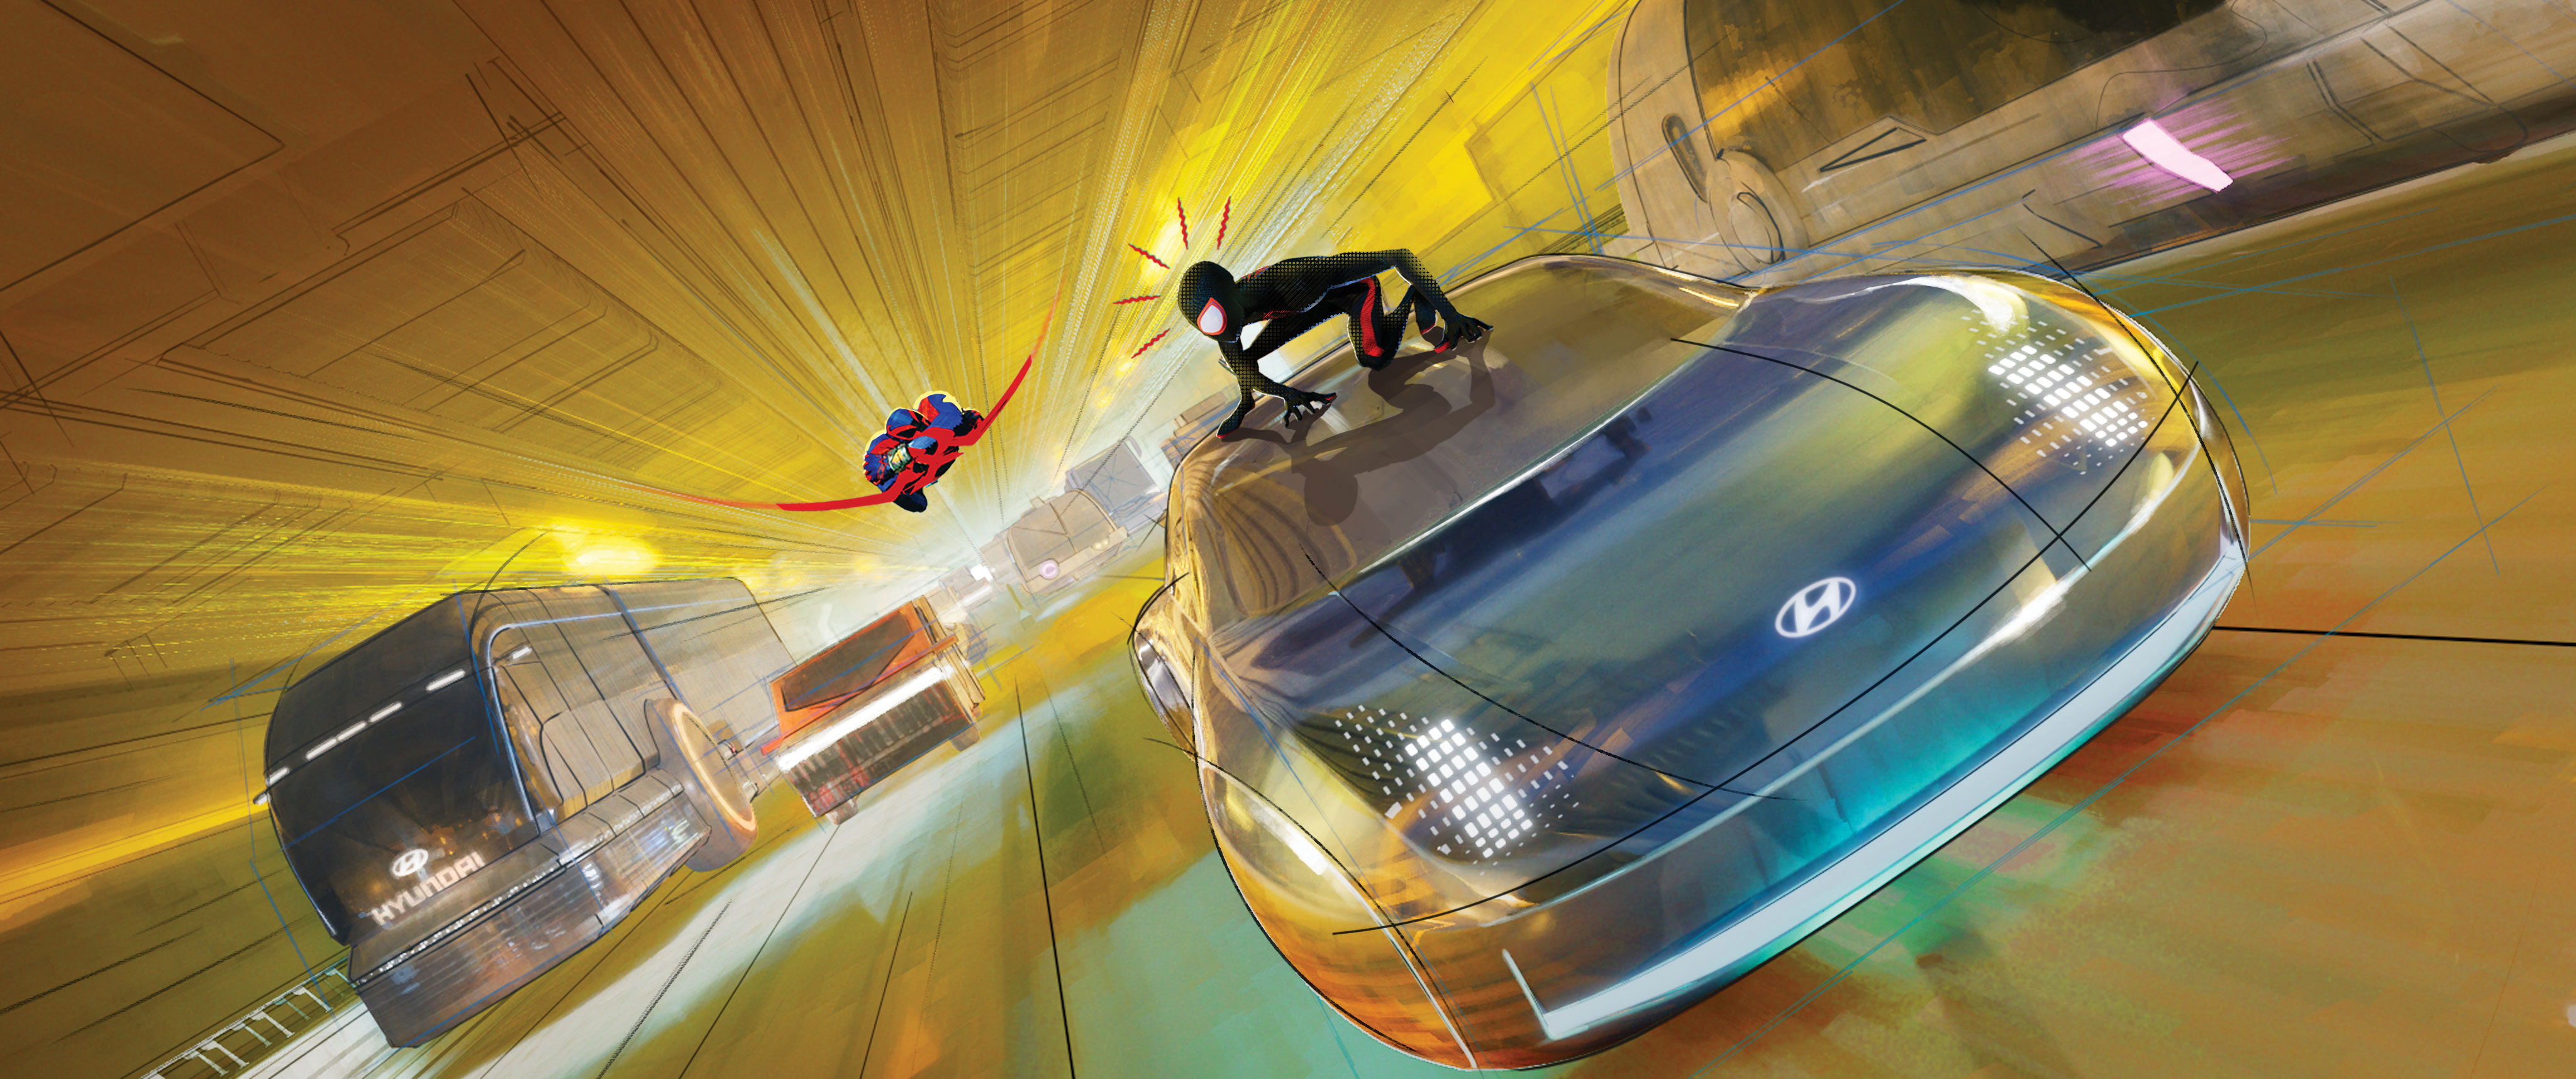 영화 스파이더맨: 어크로스 더 유니버스에 등장하는 플라잉 프로페시와 스파이더맨의 모습 <사진=현대자동차>